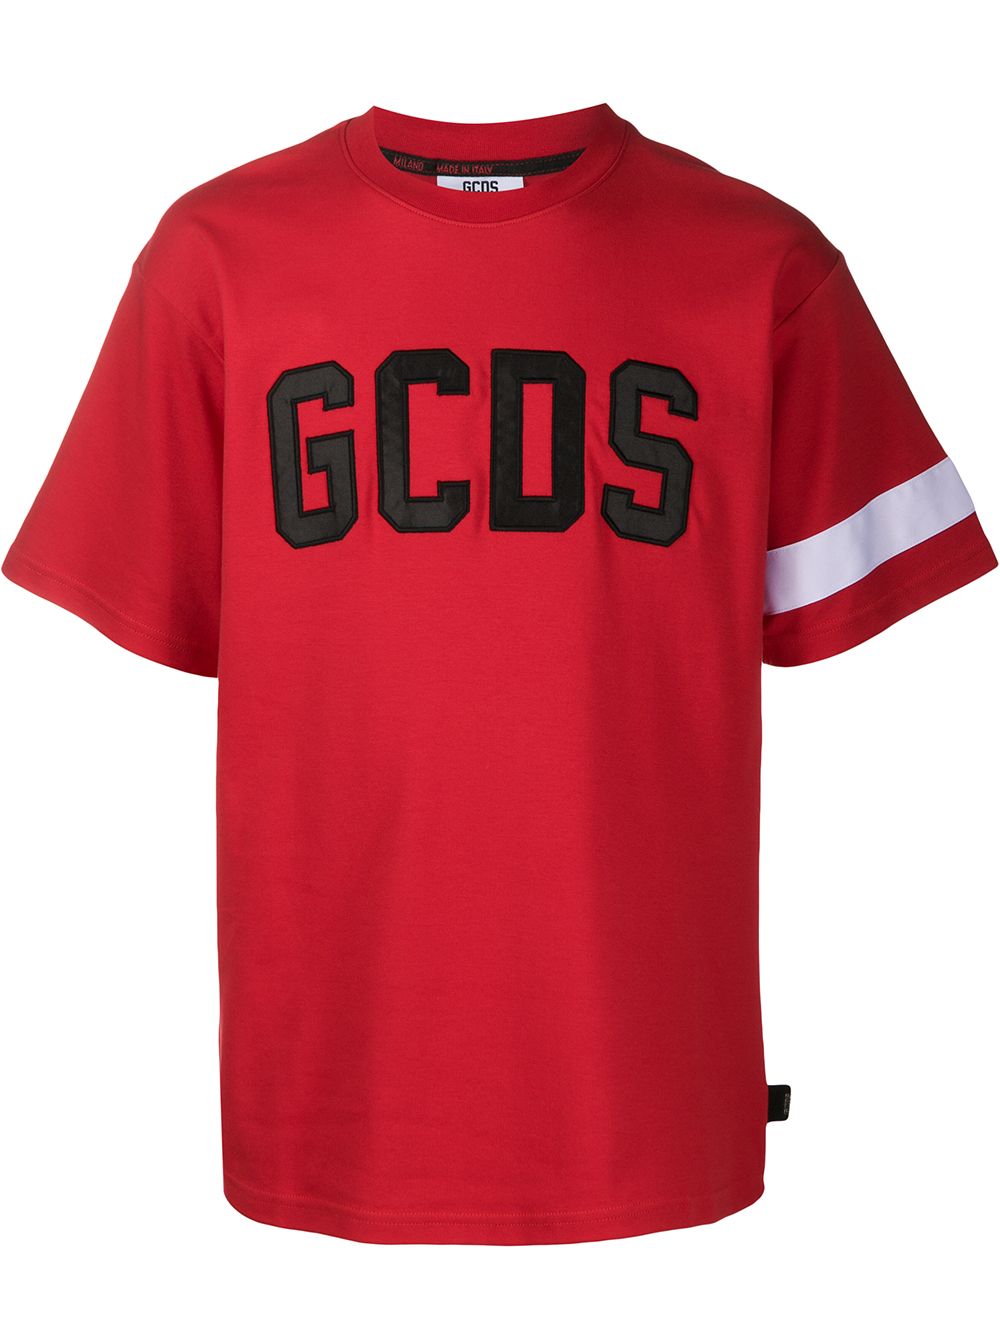 Gcds logo print T-shirt | Smart Closet